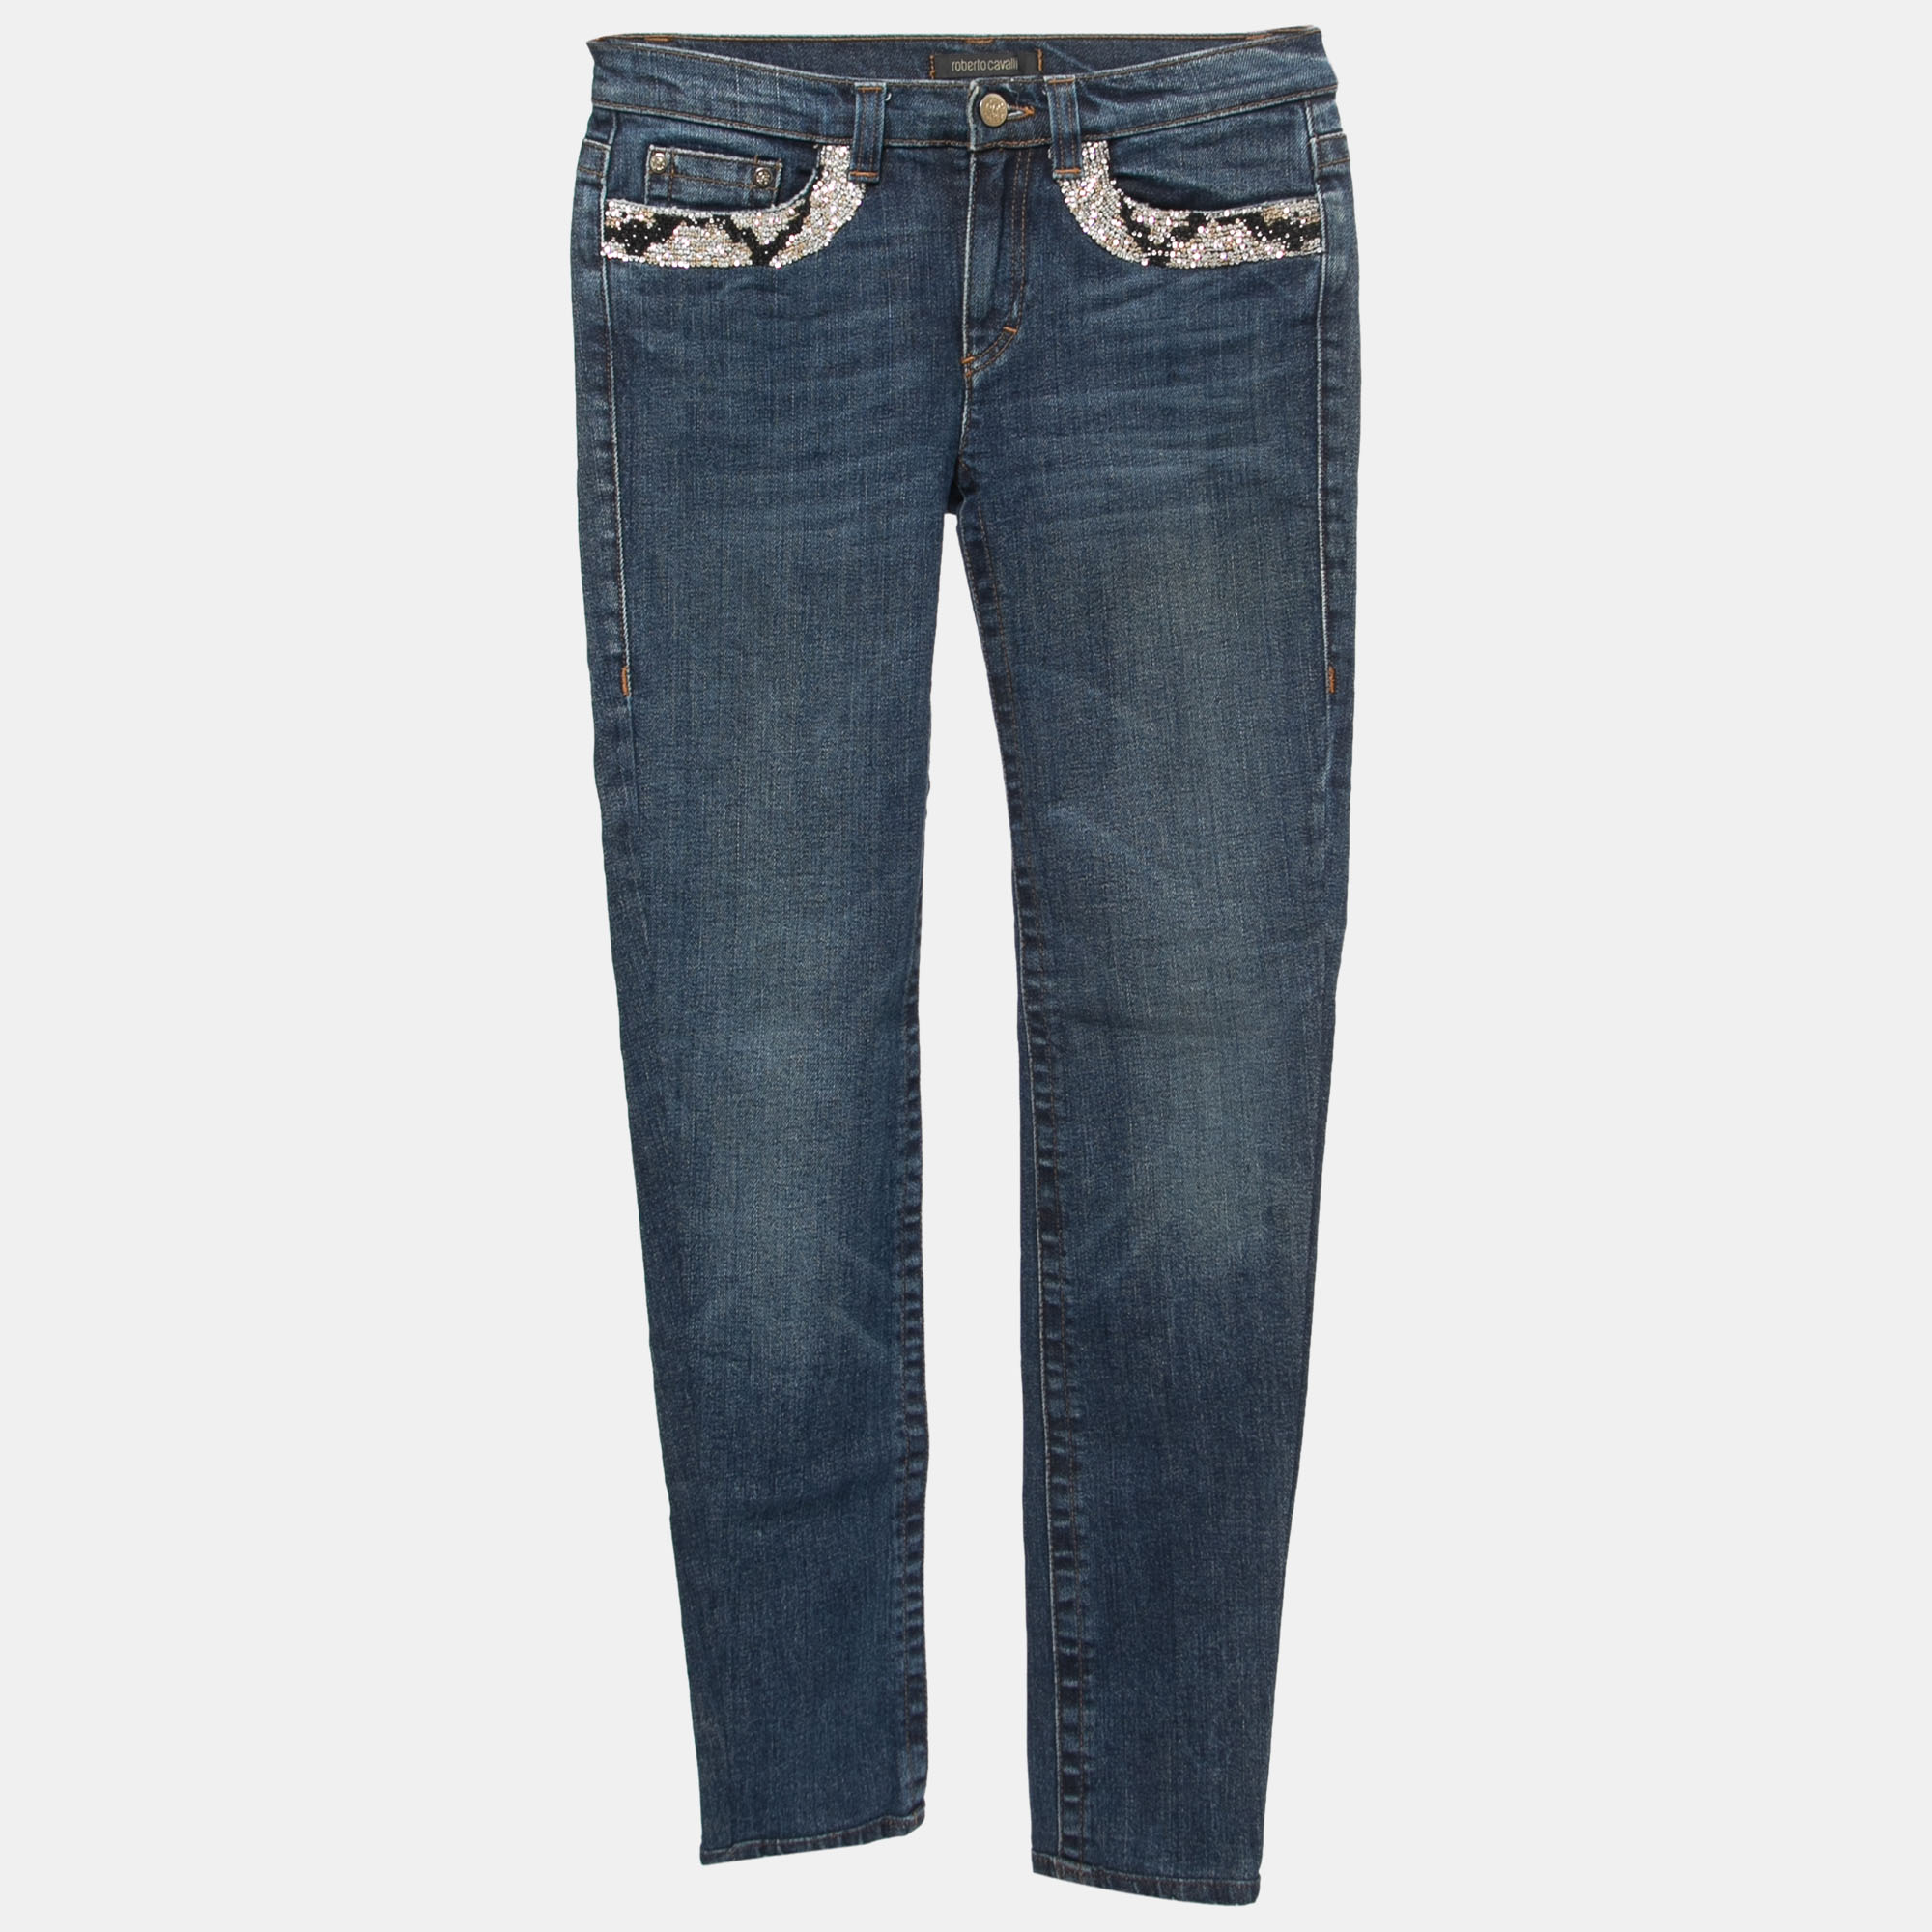 

Roberto Cavalli Blue Washed Denim Embellished Pocket Detail Straight Fit Jeans S Waist 28"